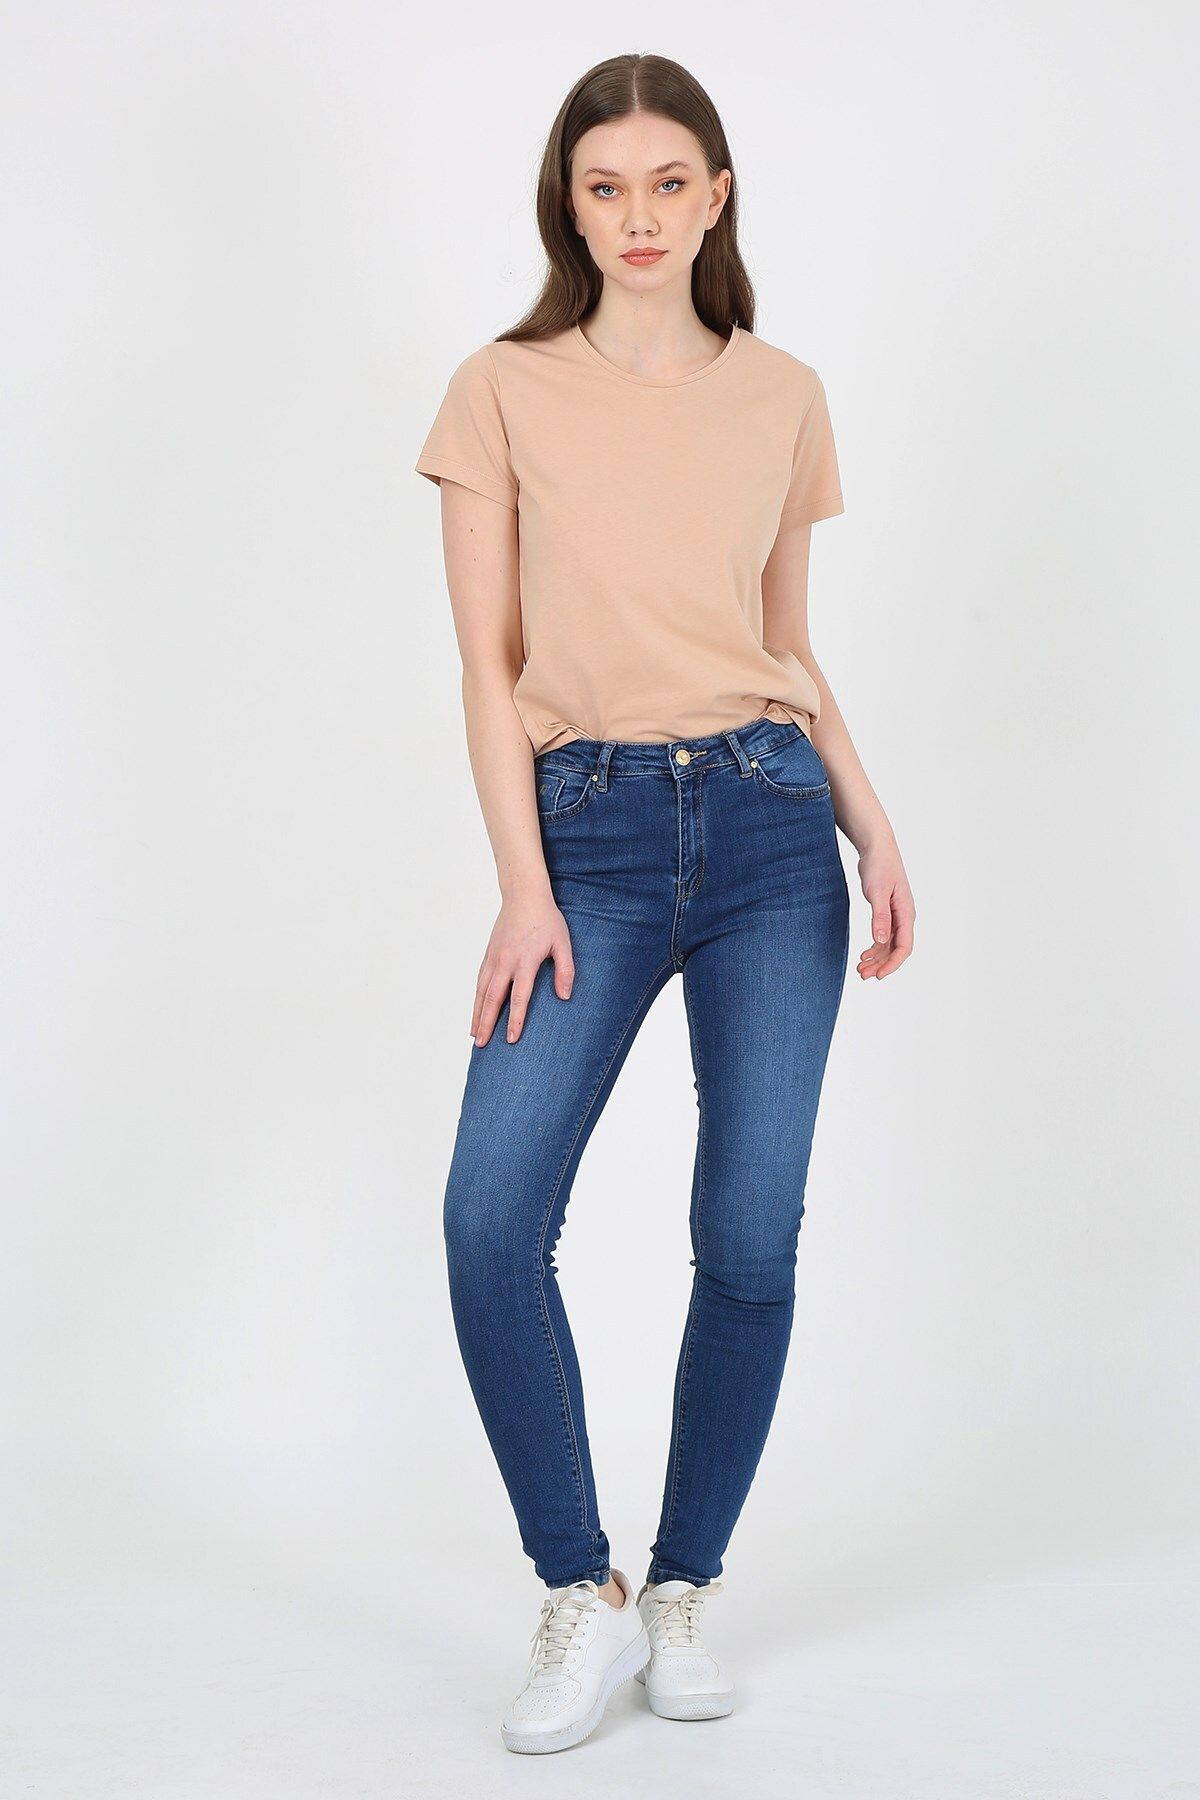 Twister Jeans Kadın Pantolon Mindy 9409-01 Blue